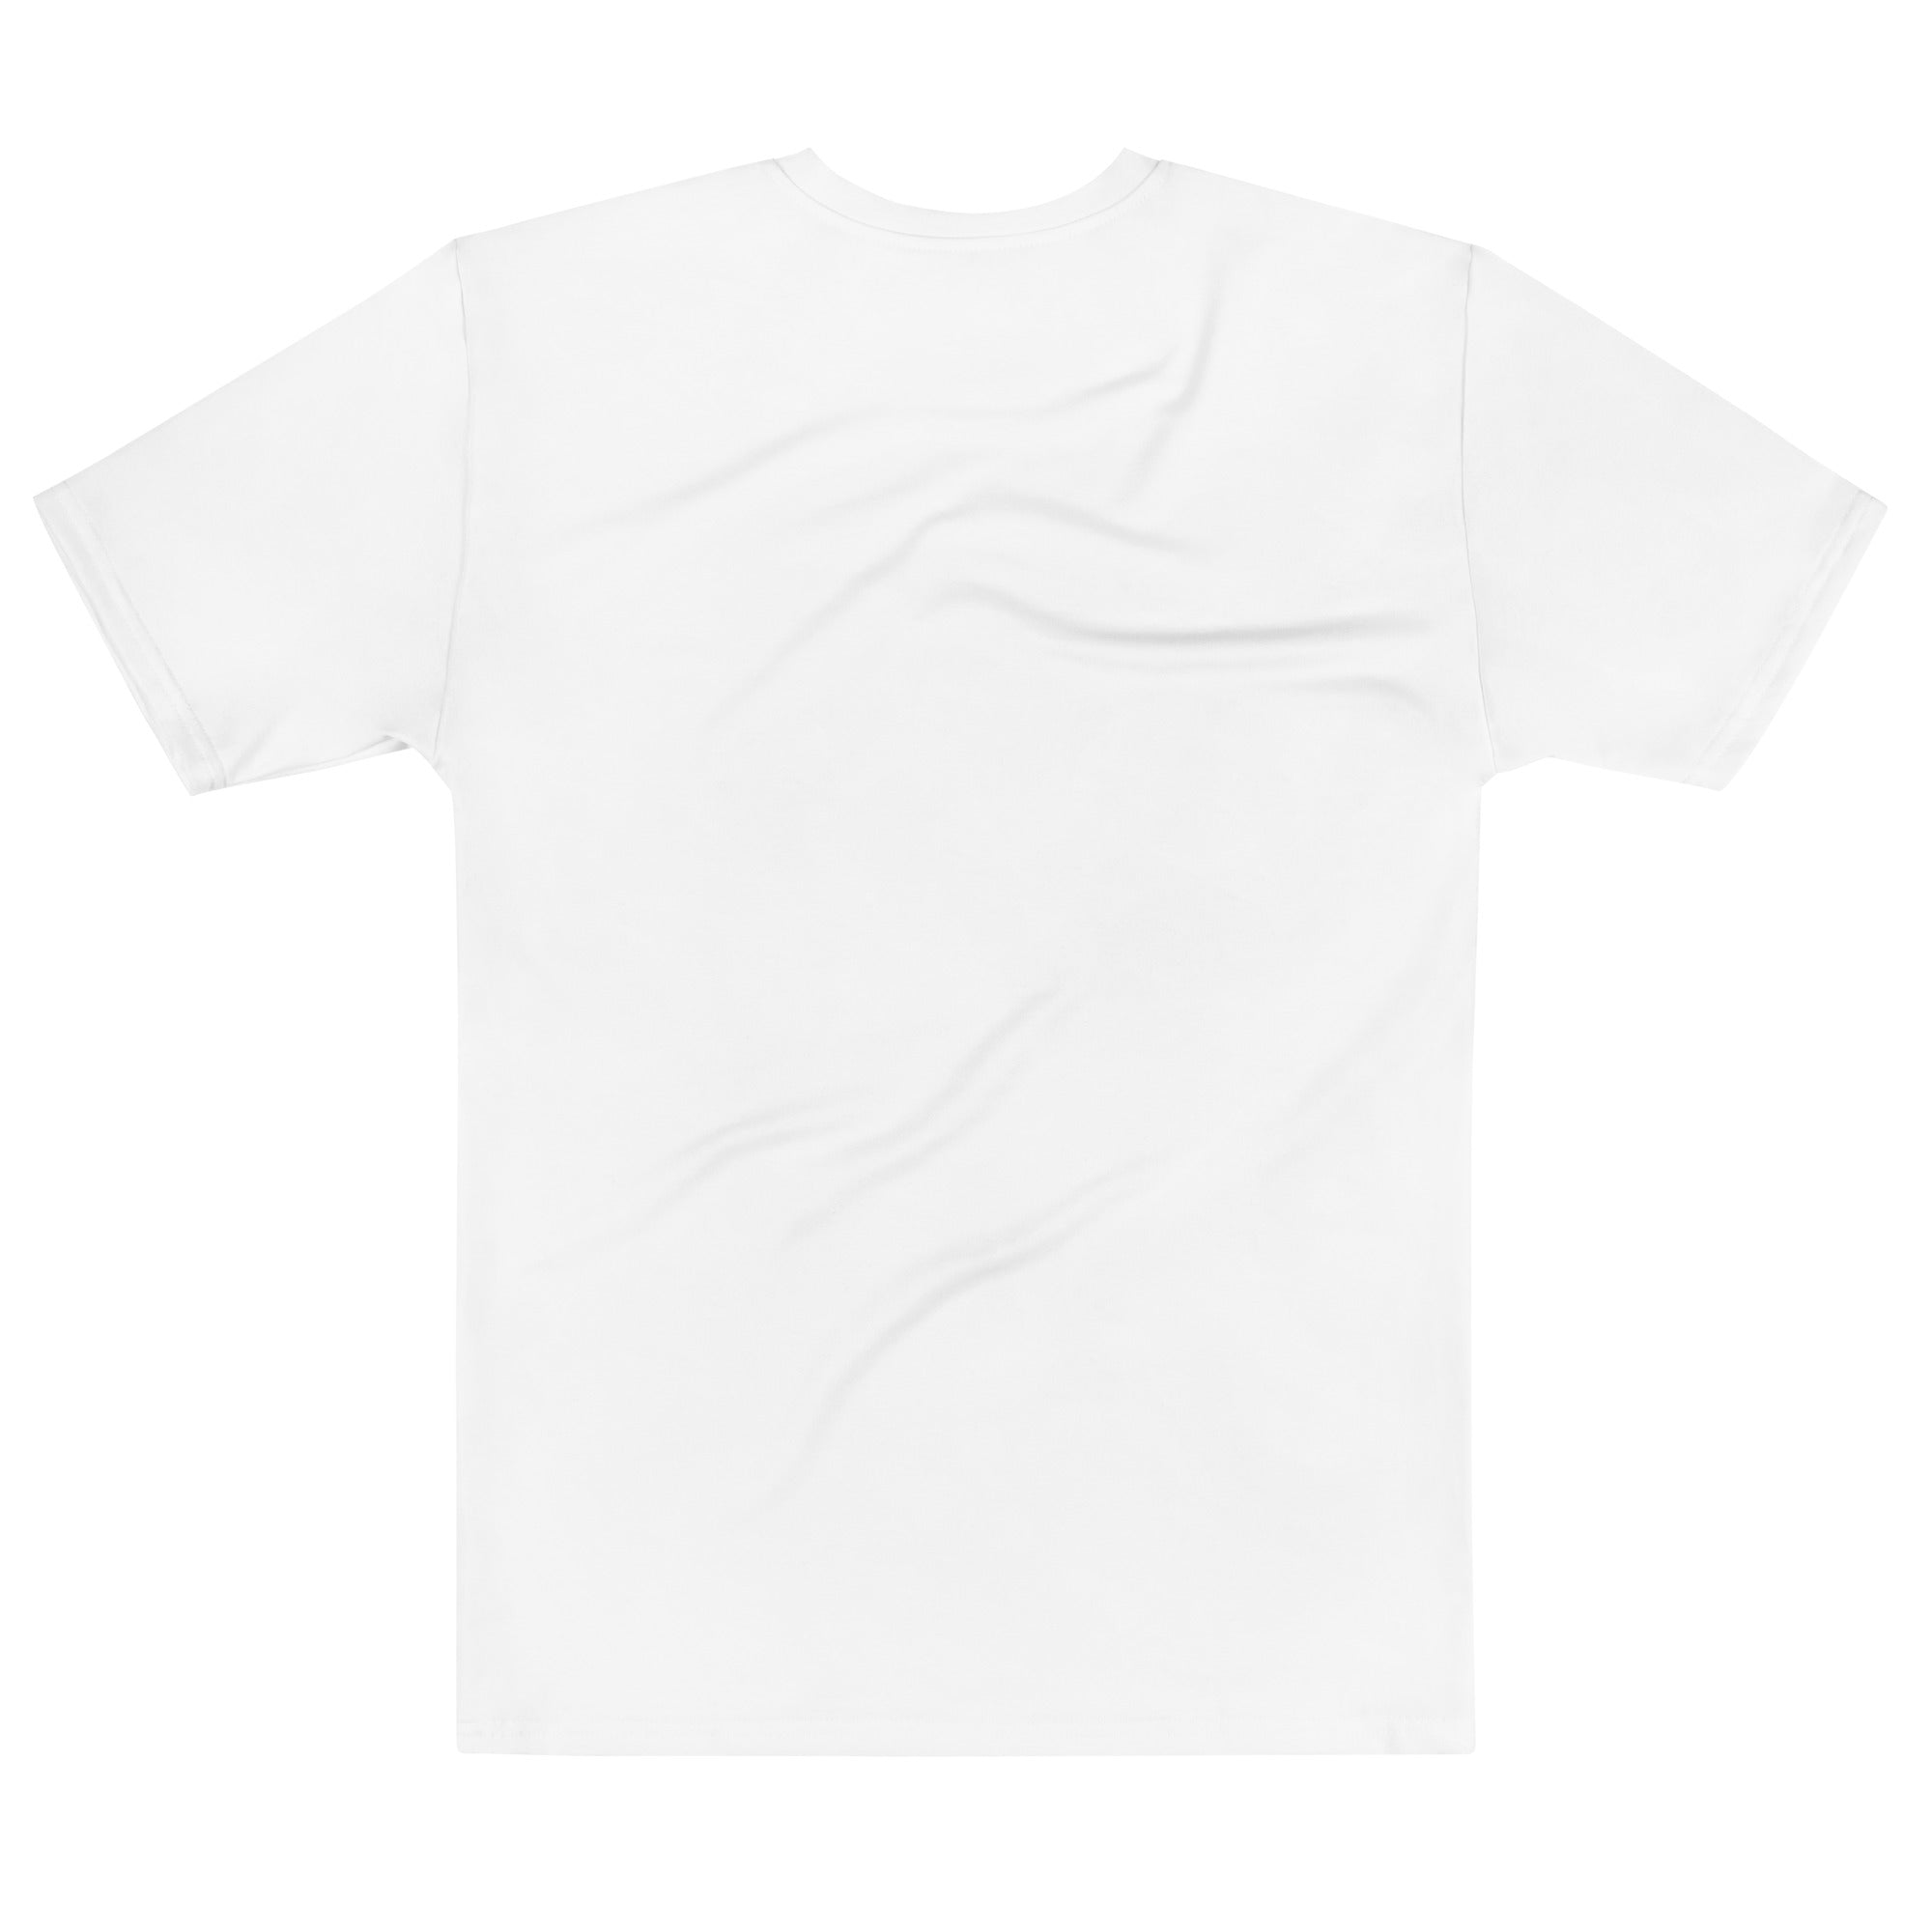 Pozi+ Vibe t-shirt